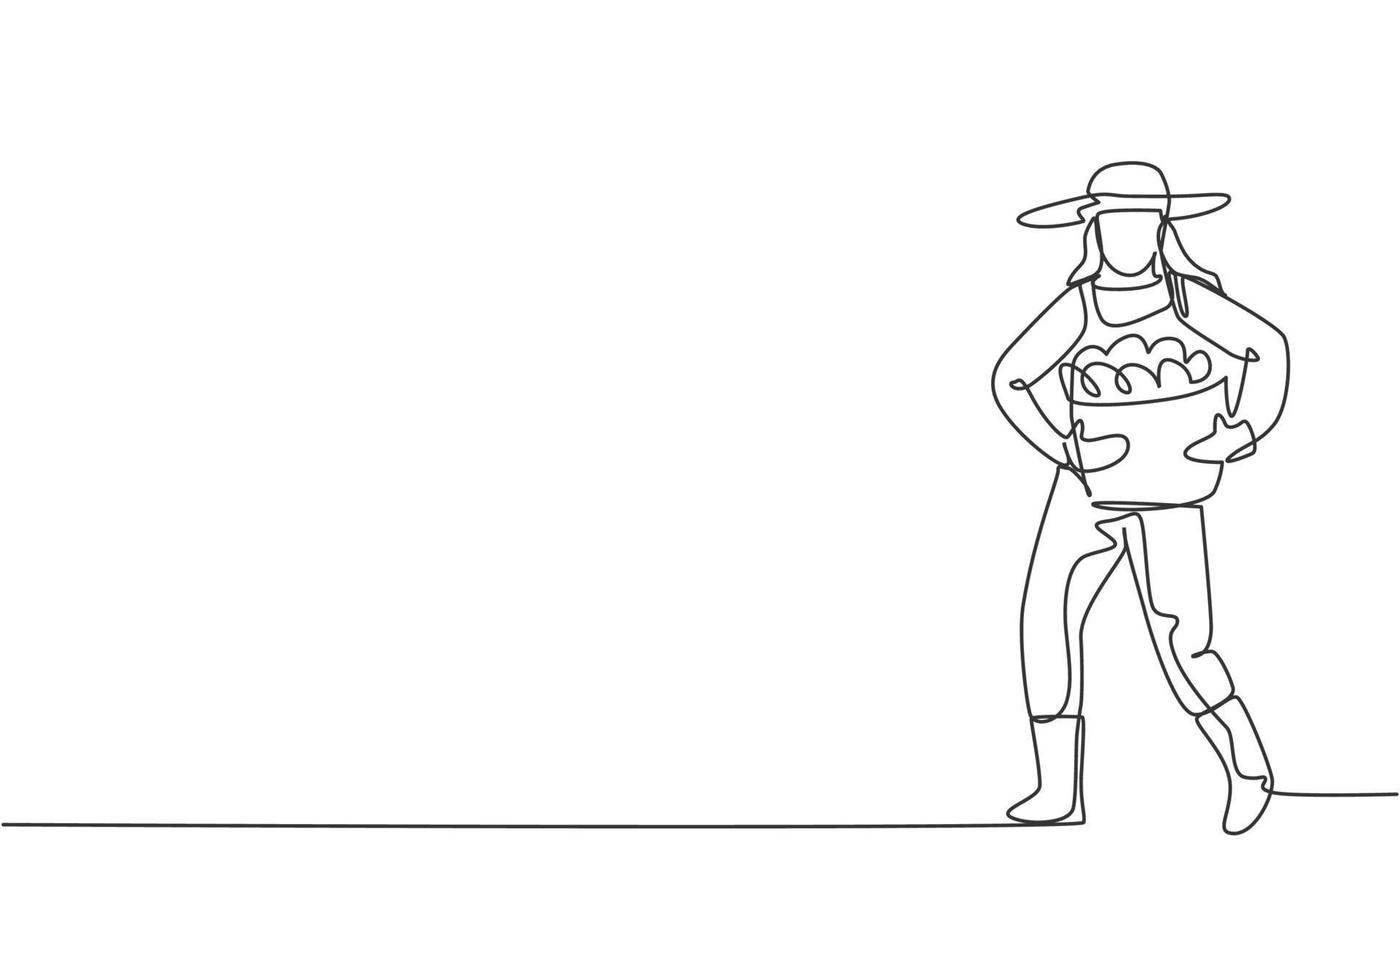 dibujo de línea continua única joven agricultora que lleva una canasta llena de frutas con las manos frente al pecho. concepto de minimalismo. Ilustración de vector de diseño gráfico de dibujo dinámico de una línea.